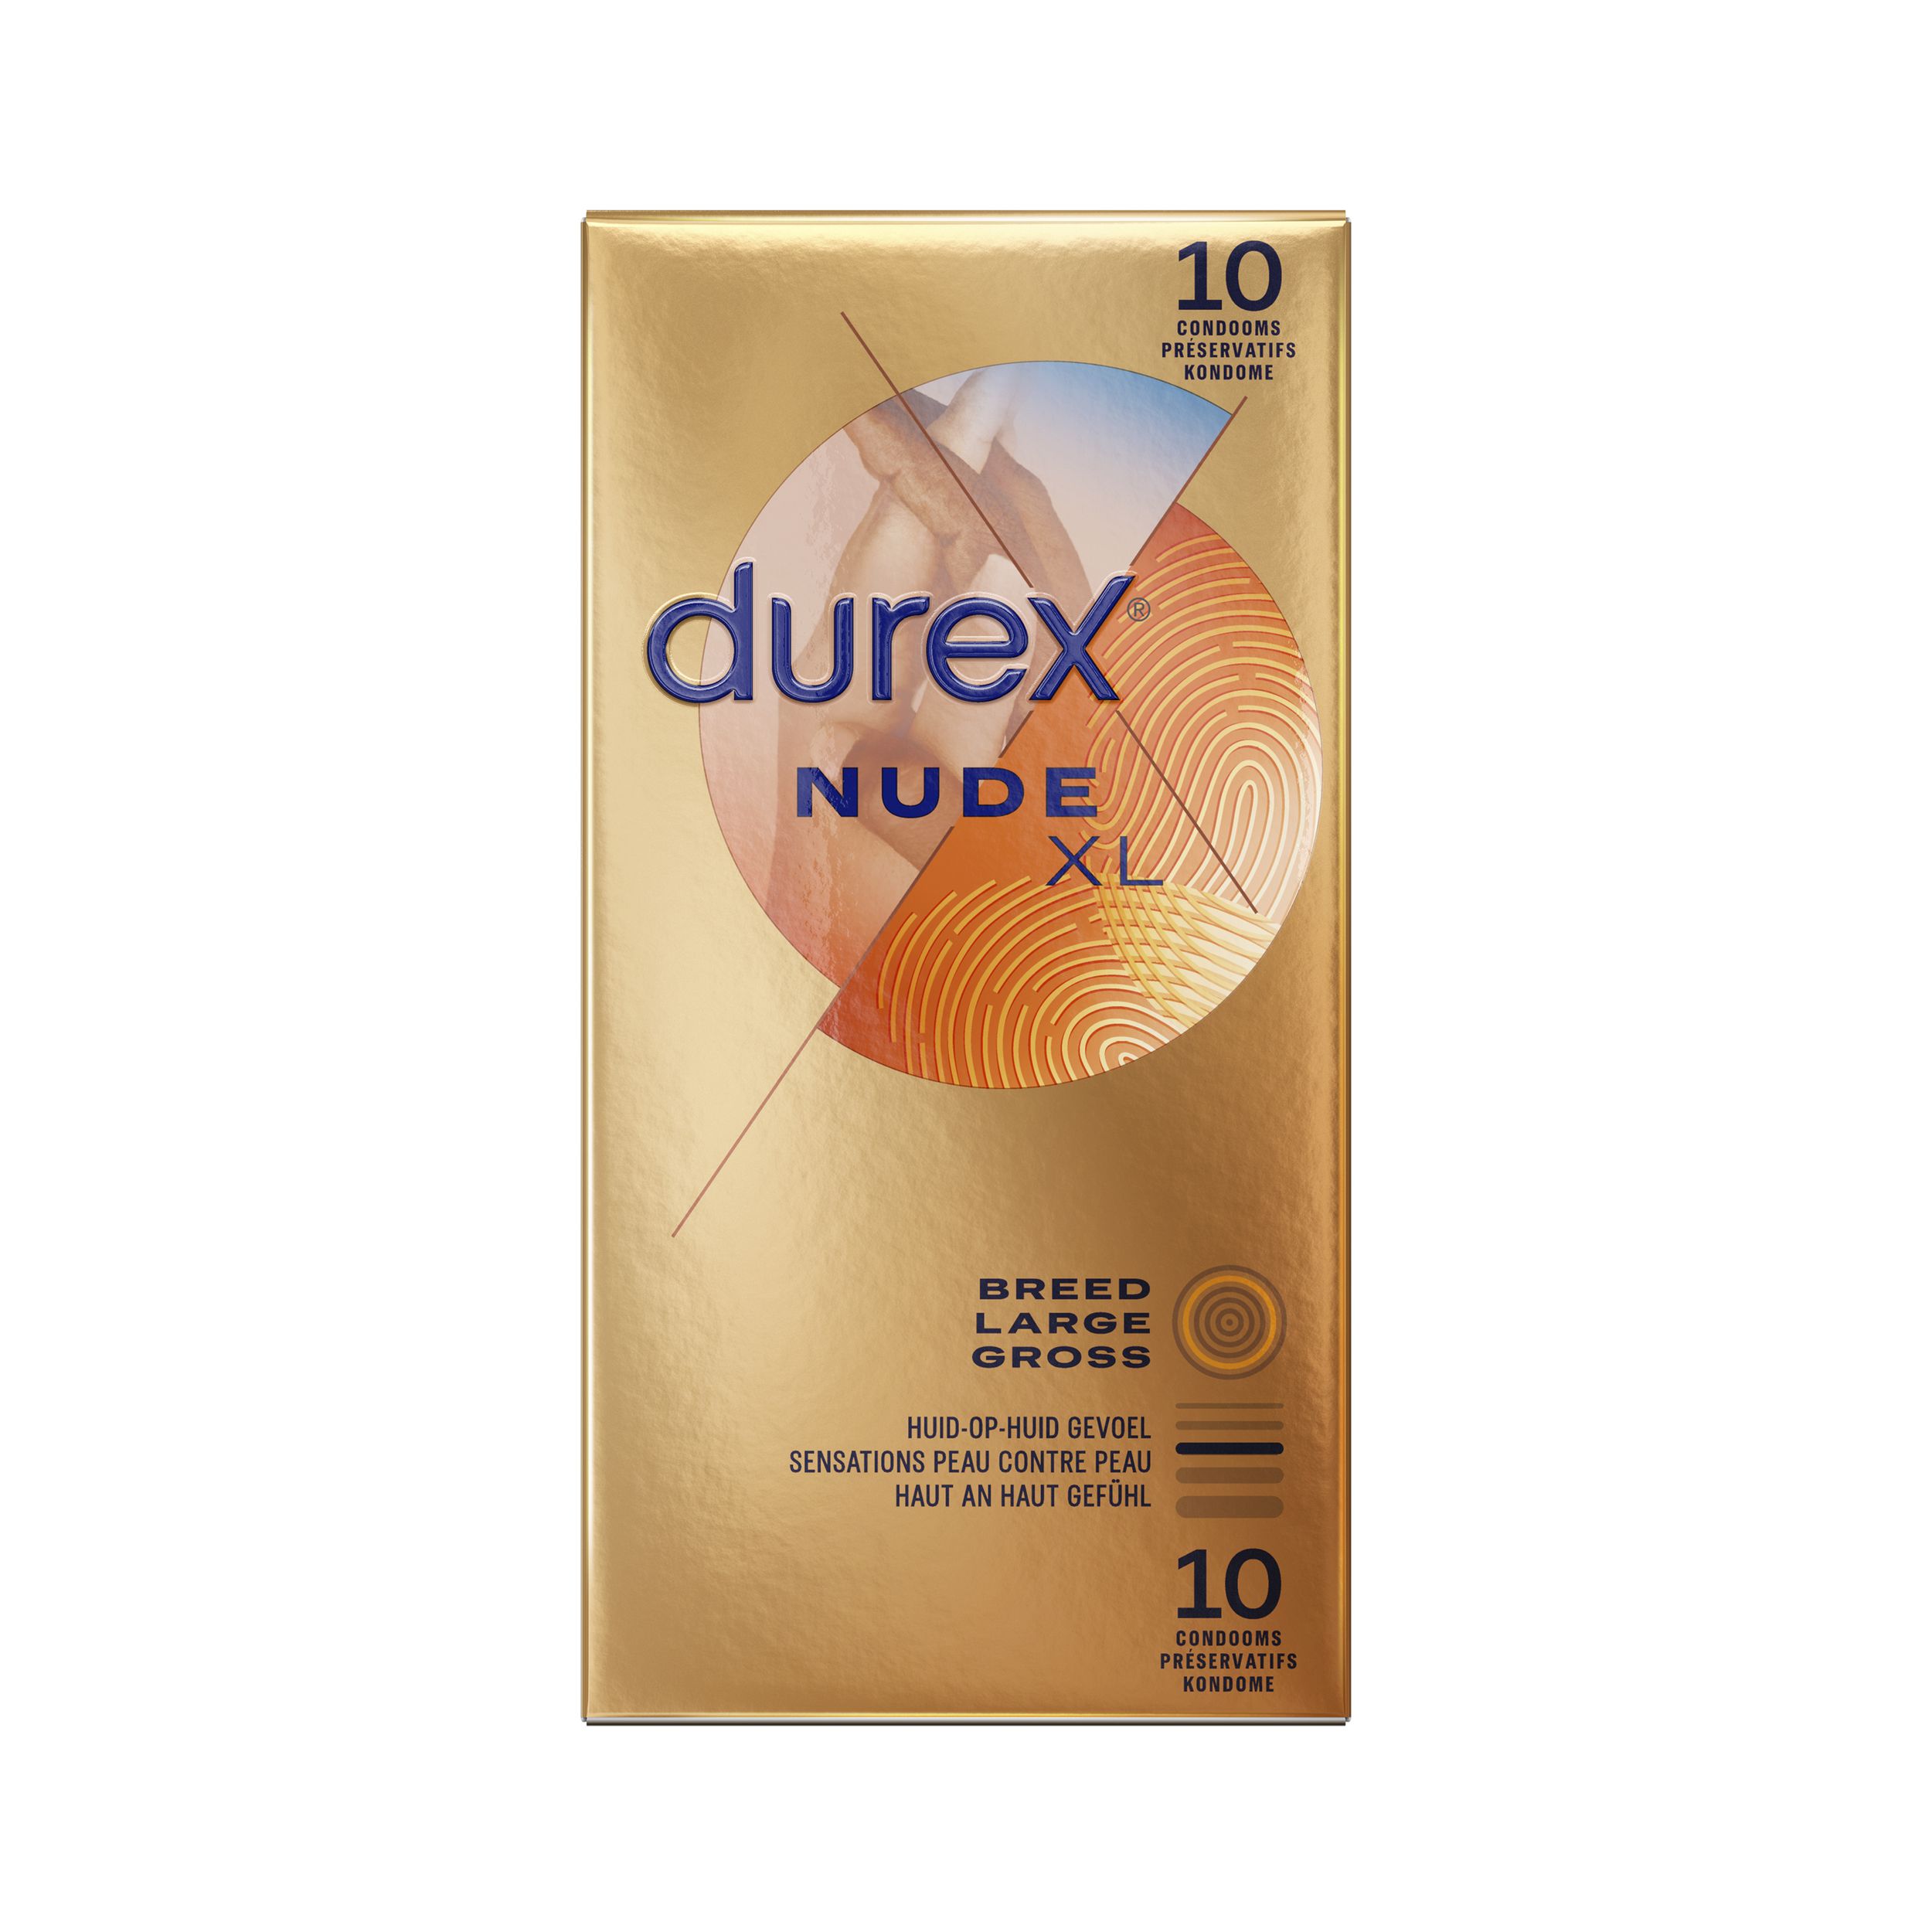 Condones Durex Nude XL - 10 unidades - EasyToys